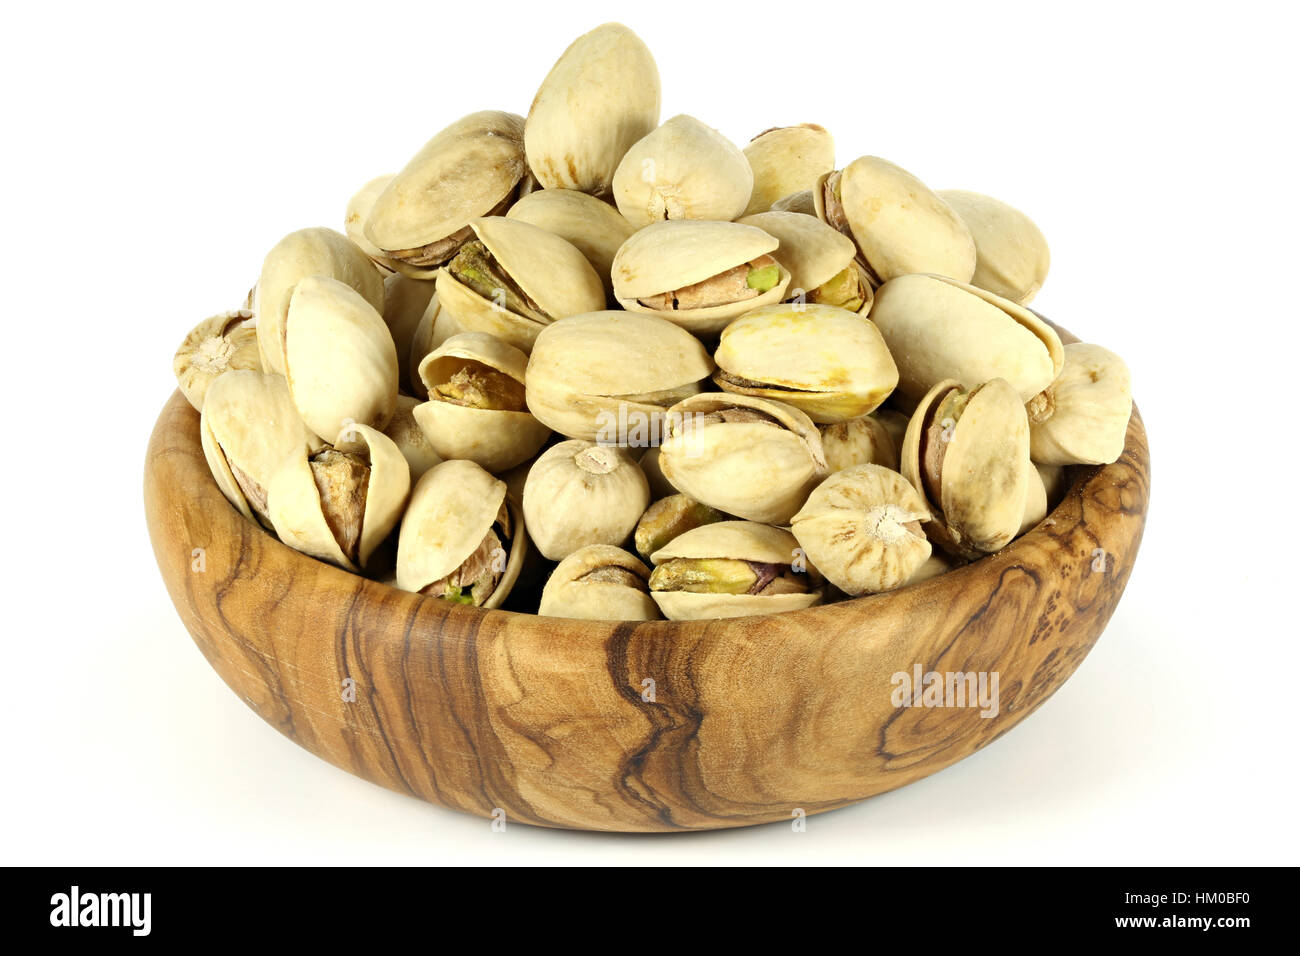 Les pistaches dans un bol en bois d'olive isolé sur fond blanc Banque D'Images